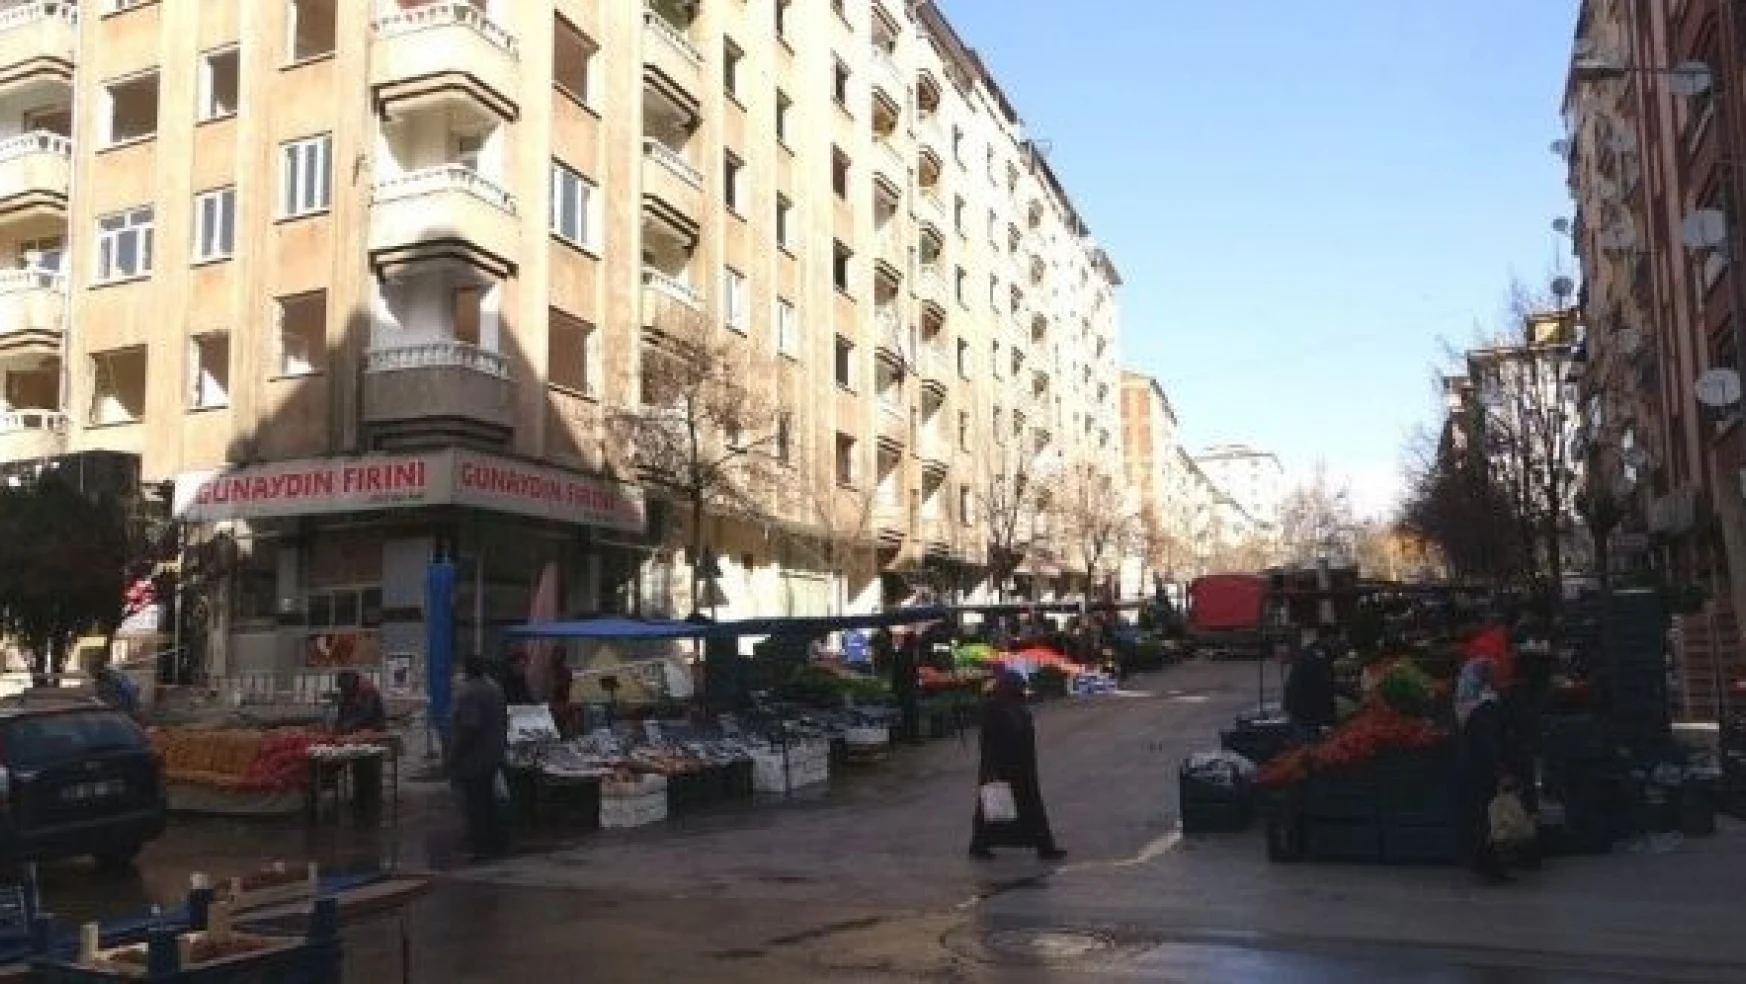 Elazığ'da semt pazarı faciaya davetiye çağırıyor... Vatandaş da esnaf da tepkili